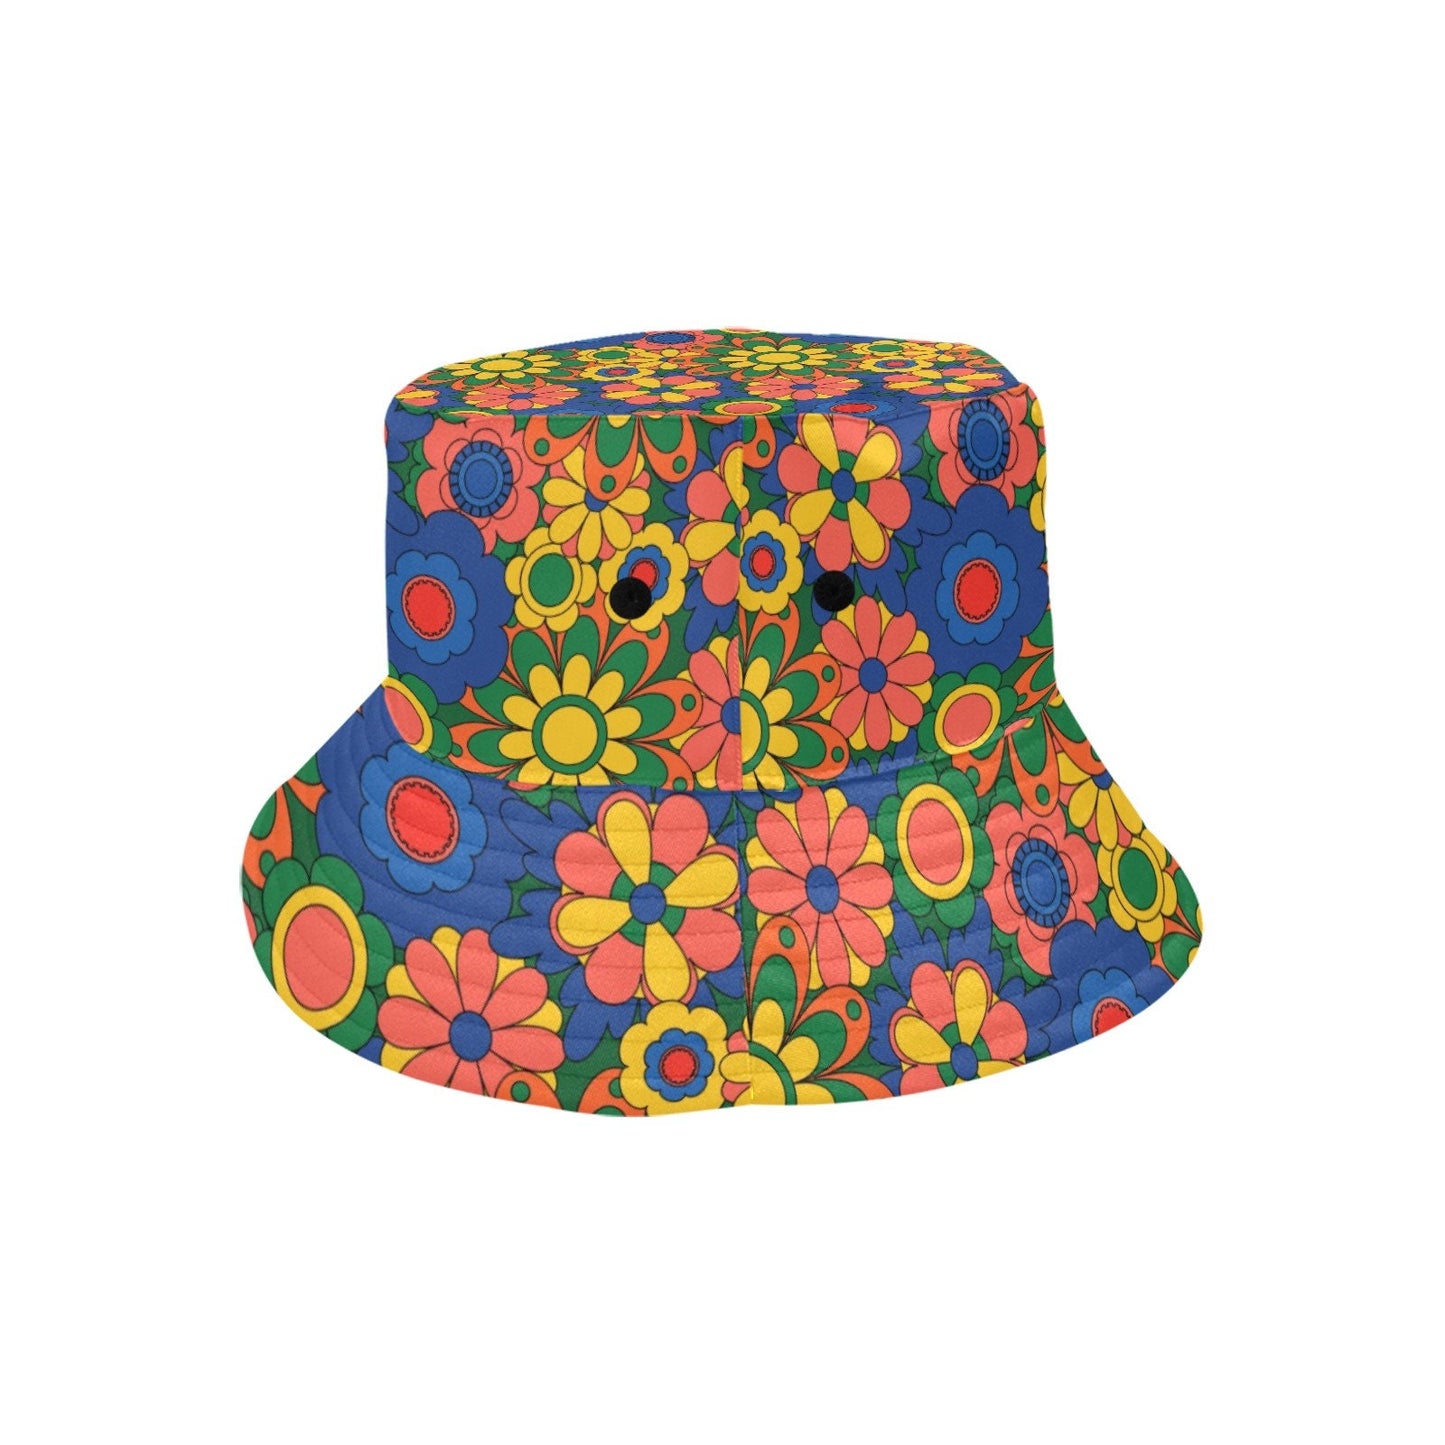 Chapeau seau, chapeau hippie, chapeau mod, chapeau unisexe, chapeau rétro, chapeau de style années 60 70, chapeau floral, chapeau Boho, chapeau seau multicolore, chapeau seau bleu